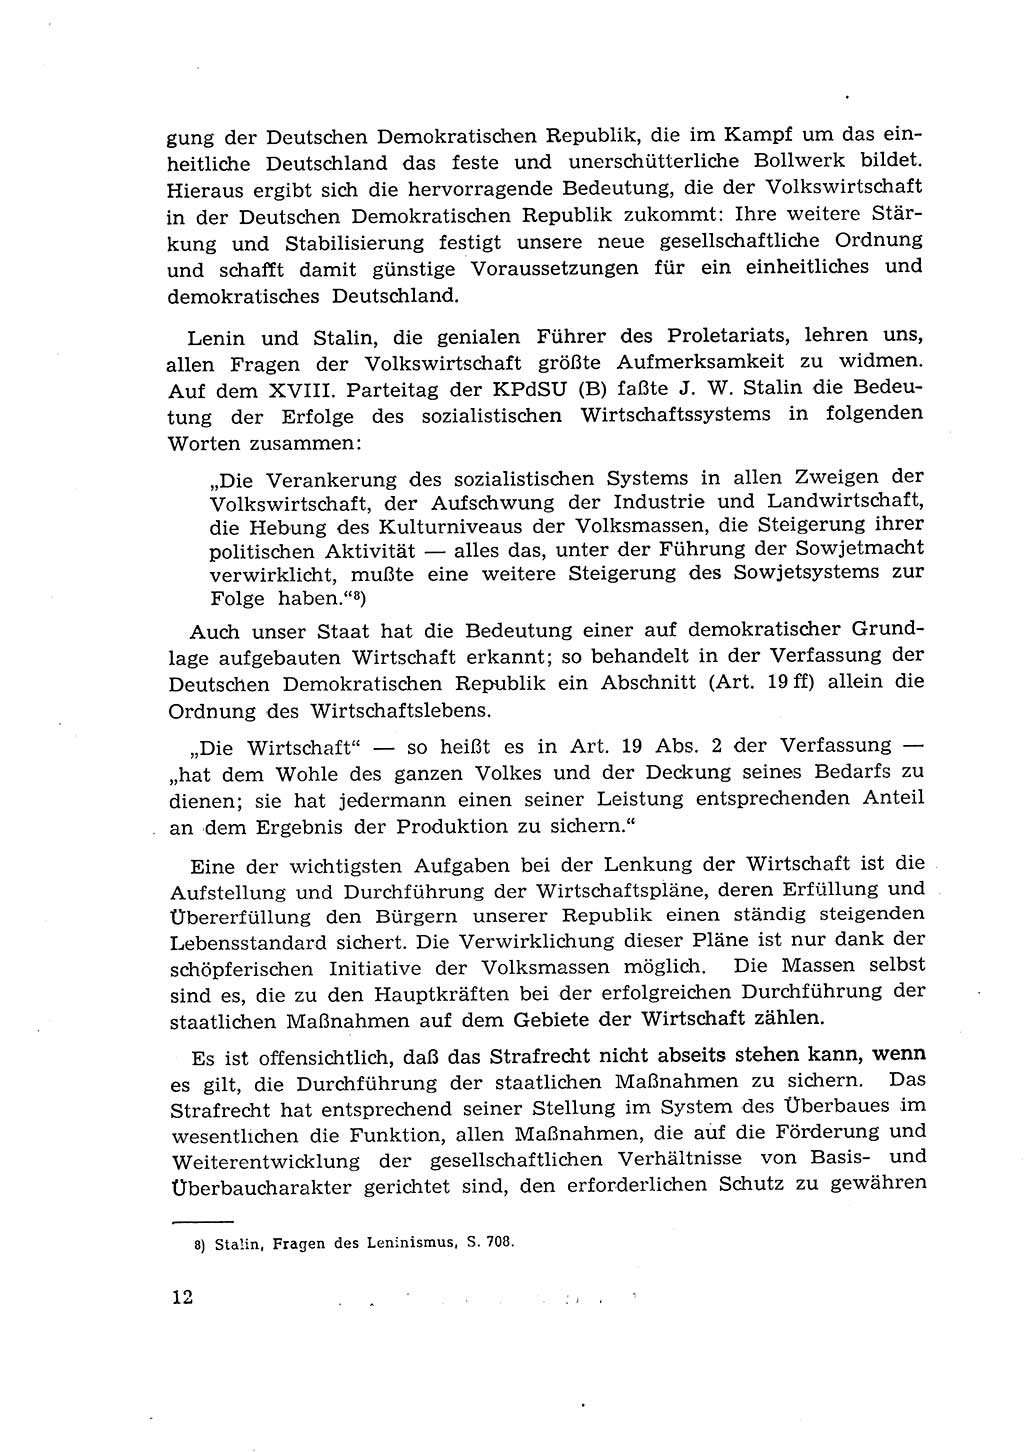 Materialien zum Strafrecht, Besonderer Teil [Deutsche Demokratische Republik (DDR)] 1955, Seite 12 (Mat. Strafr. BT DDR 1955, S. 12)